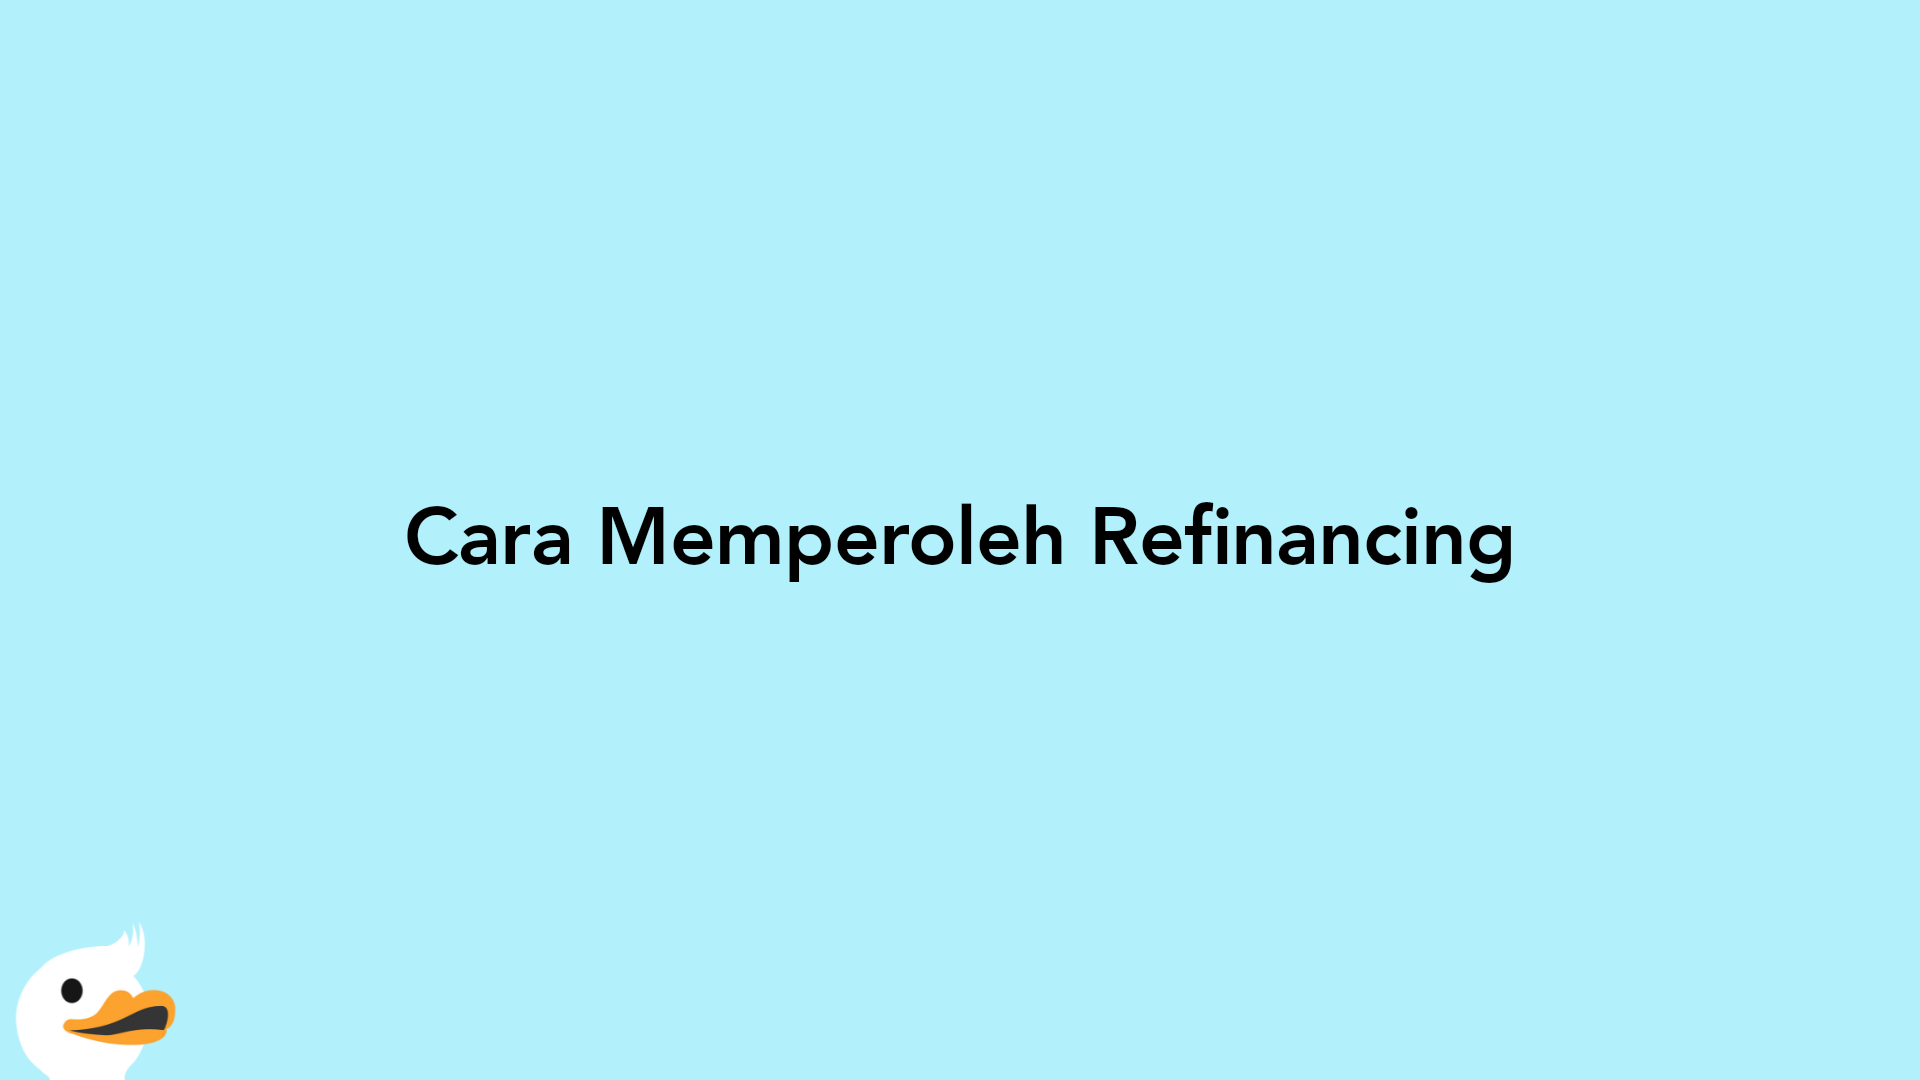 Cara Memperoleh Refinancing